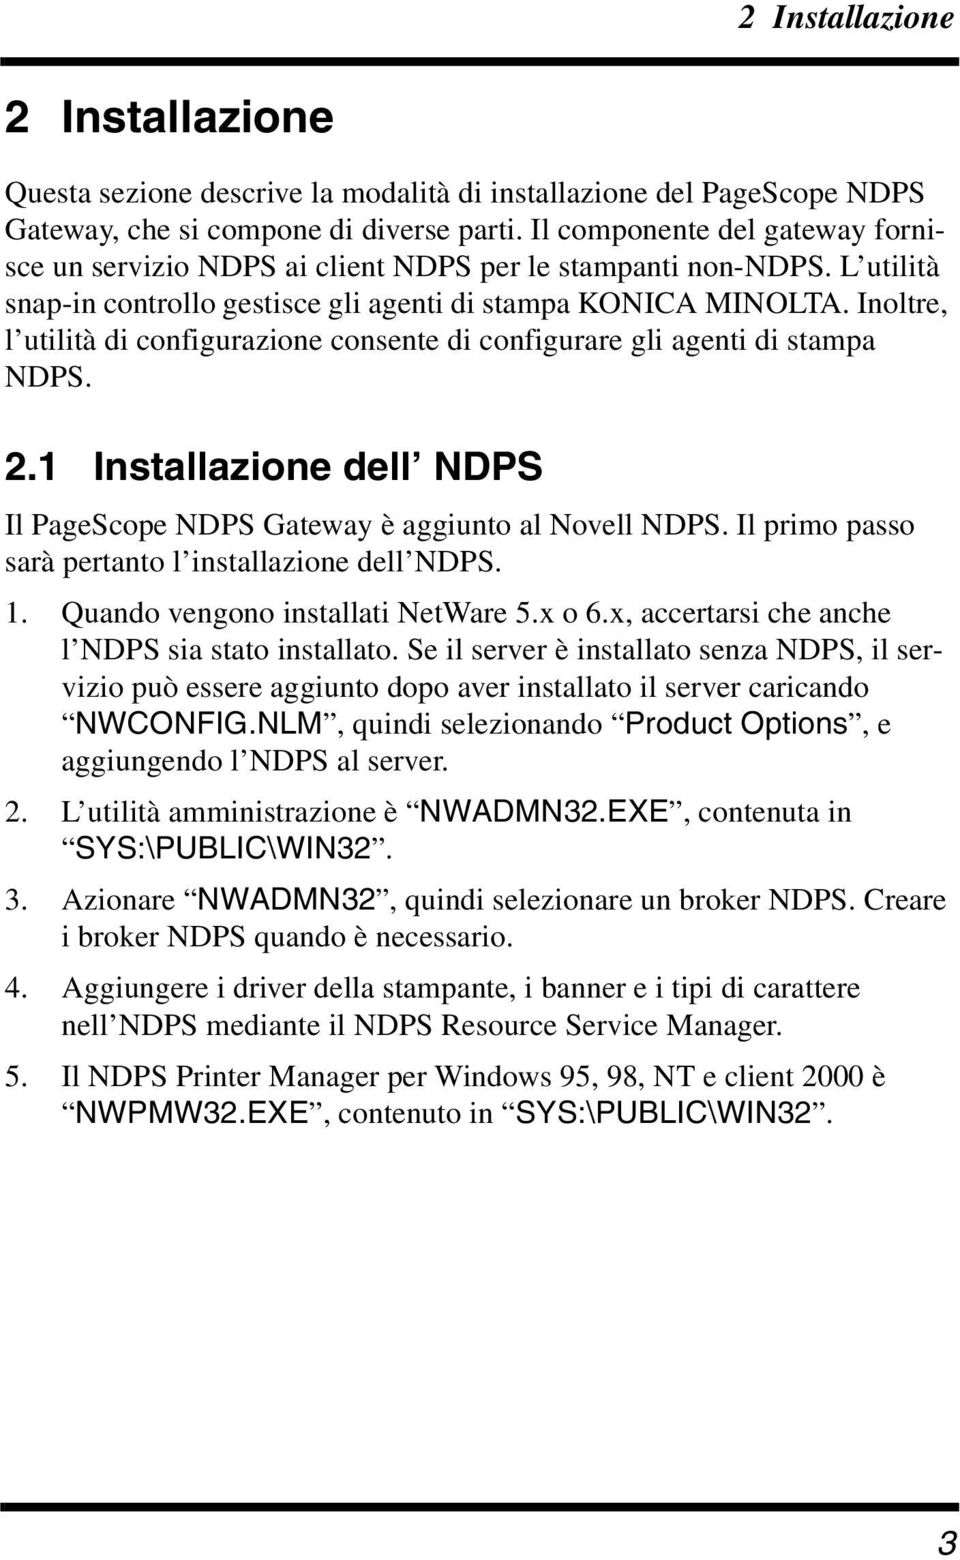 Inoltre, l utilità di configurazione consente di configurare gli agenti di stampa NDPS. 2.1 Installazione dell NDPS Il PageScope NDPS Gateway è aggiunto al Novell NDPS.